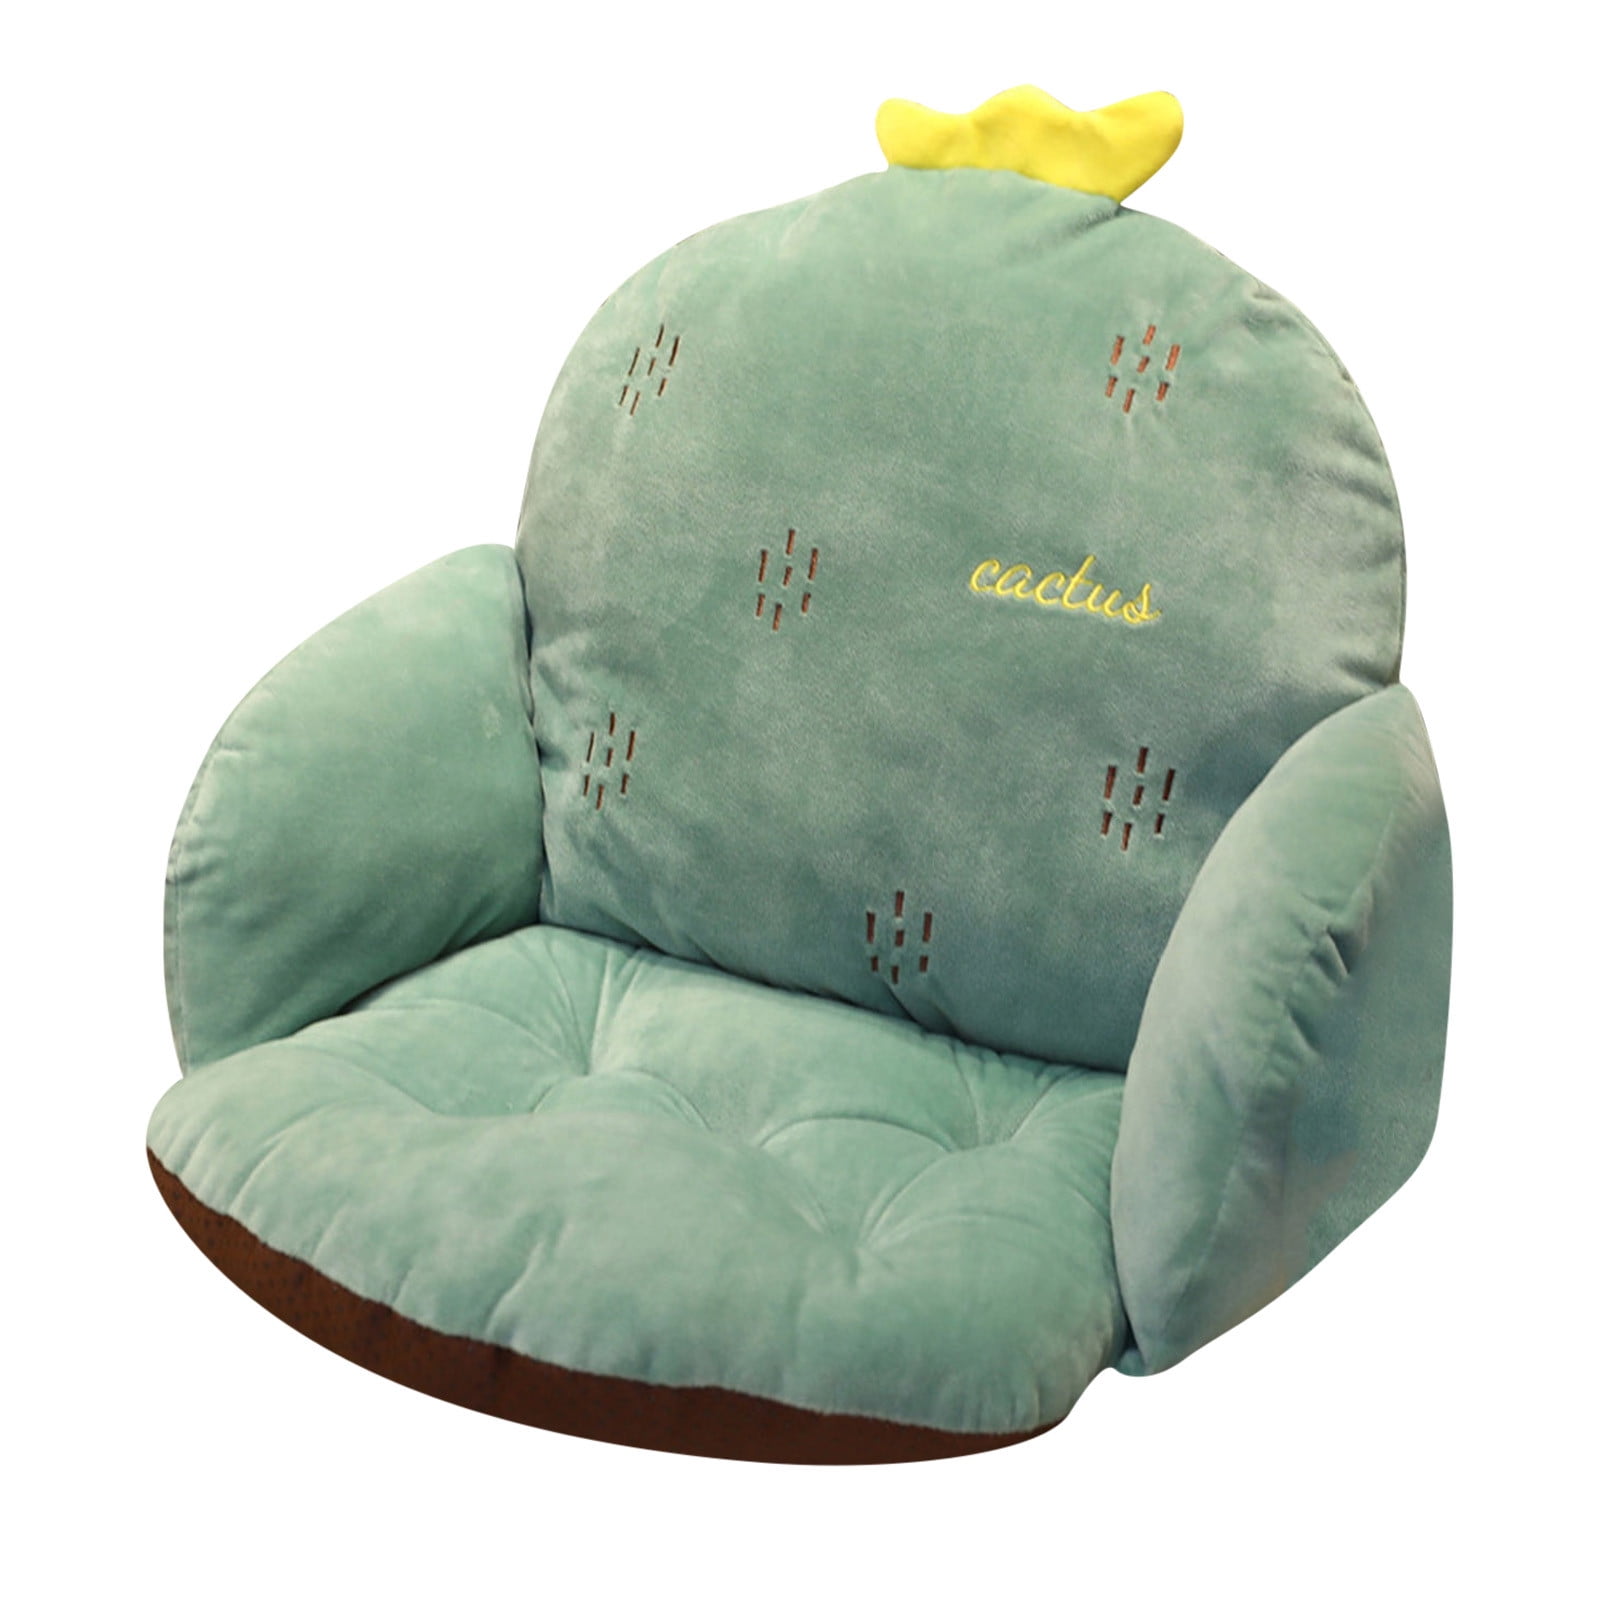 Airplane Cushion for Kids Cute Cartoon Cushion Back Office Chair